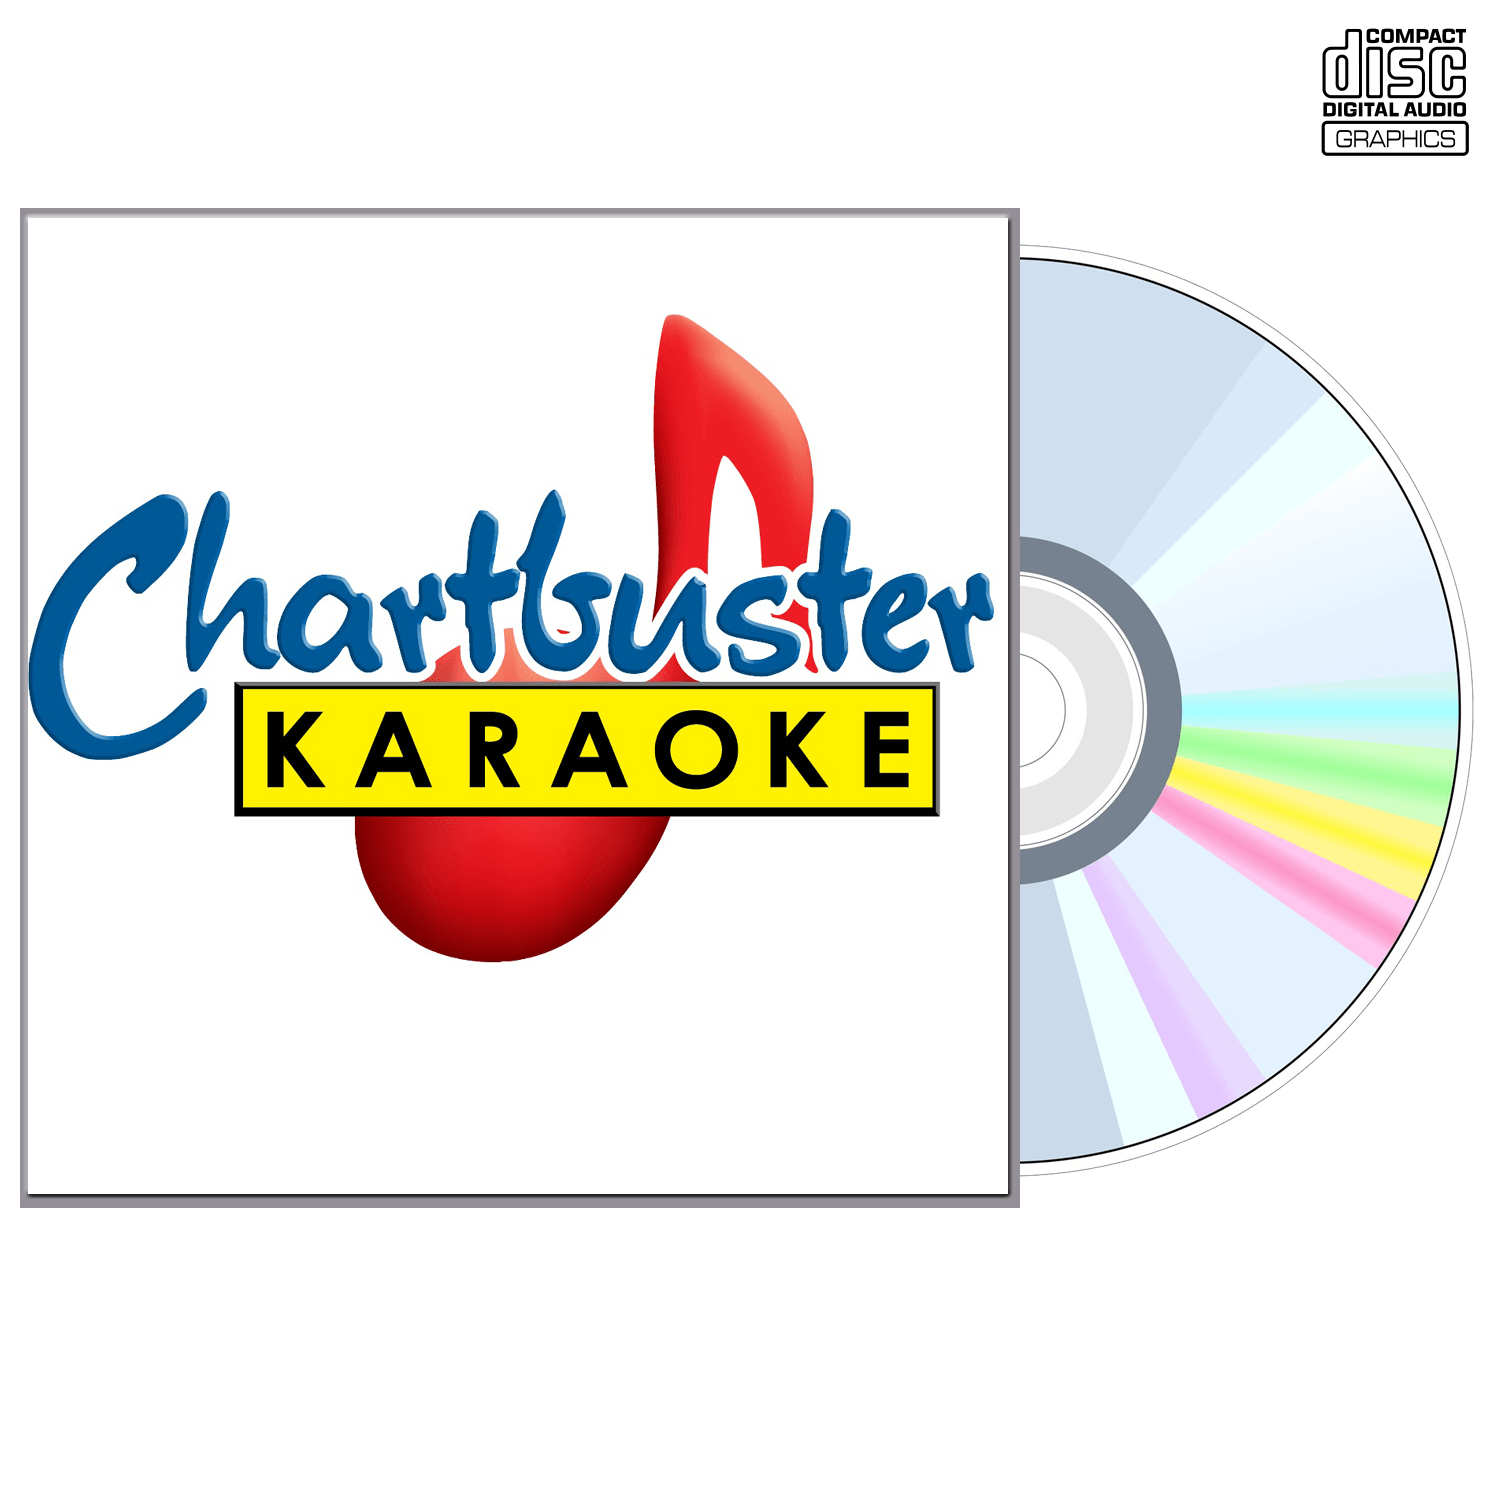 Mark Chestnutt Vol 1 - CD+G - Chartbuster Karaoke - Karaoke Home Entertainment